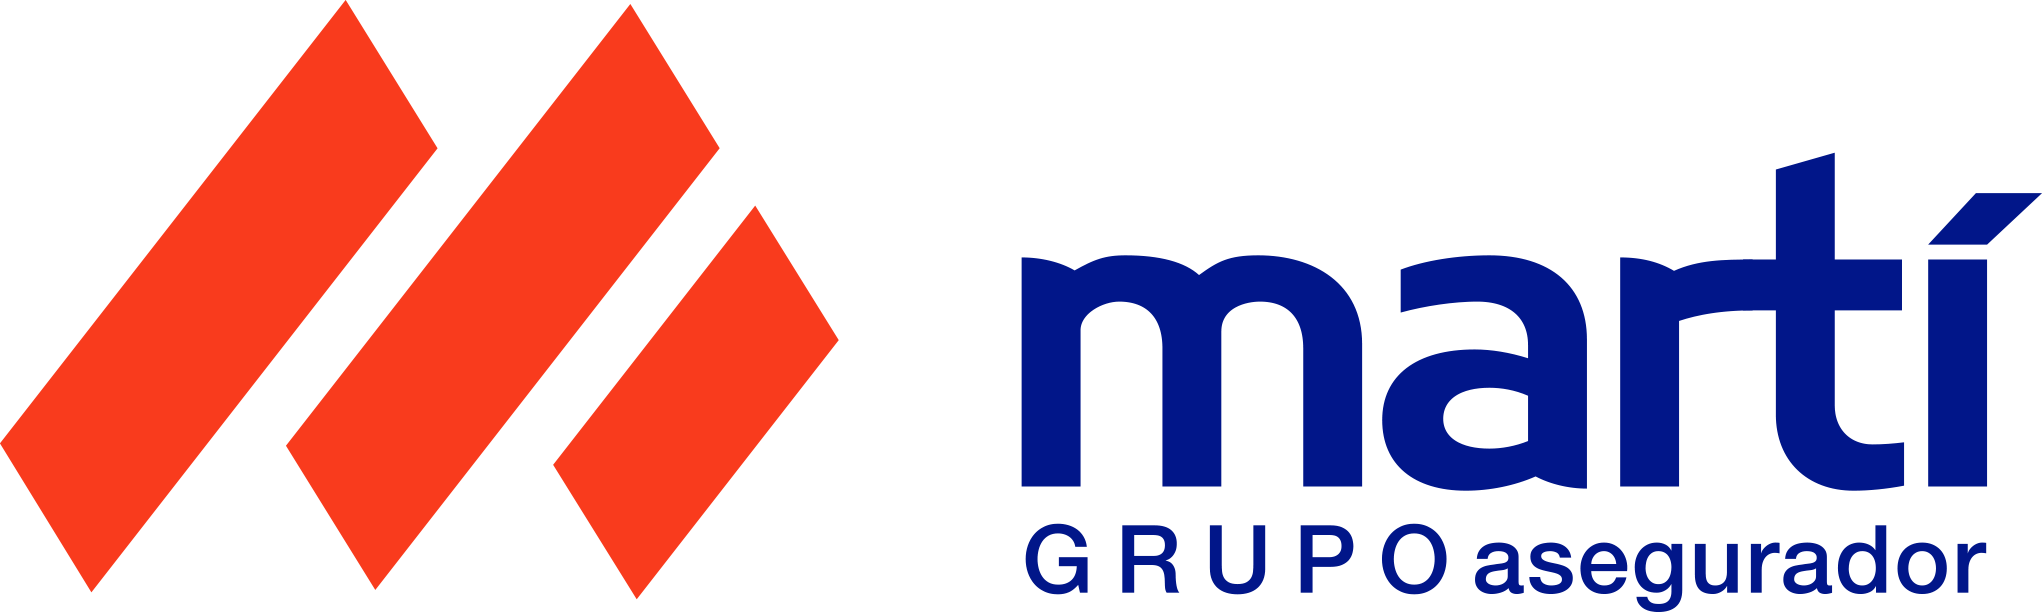 nuevo logotipo Grupo Martí